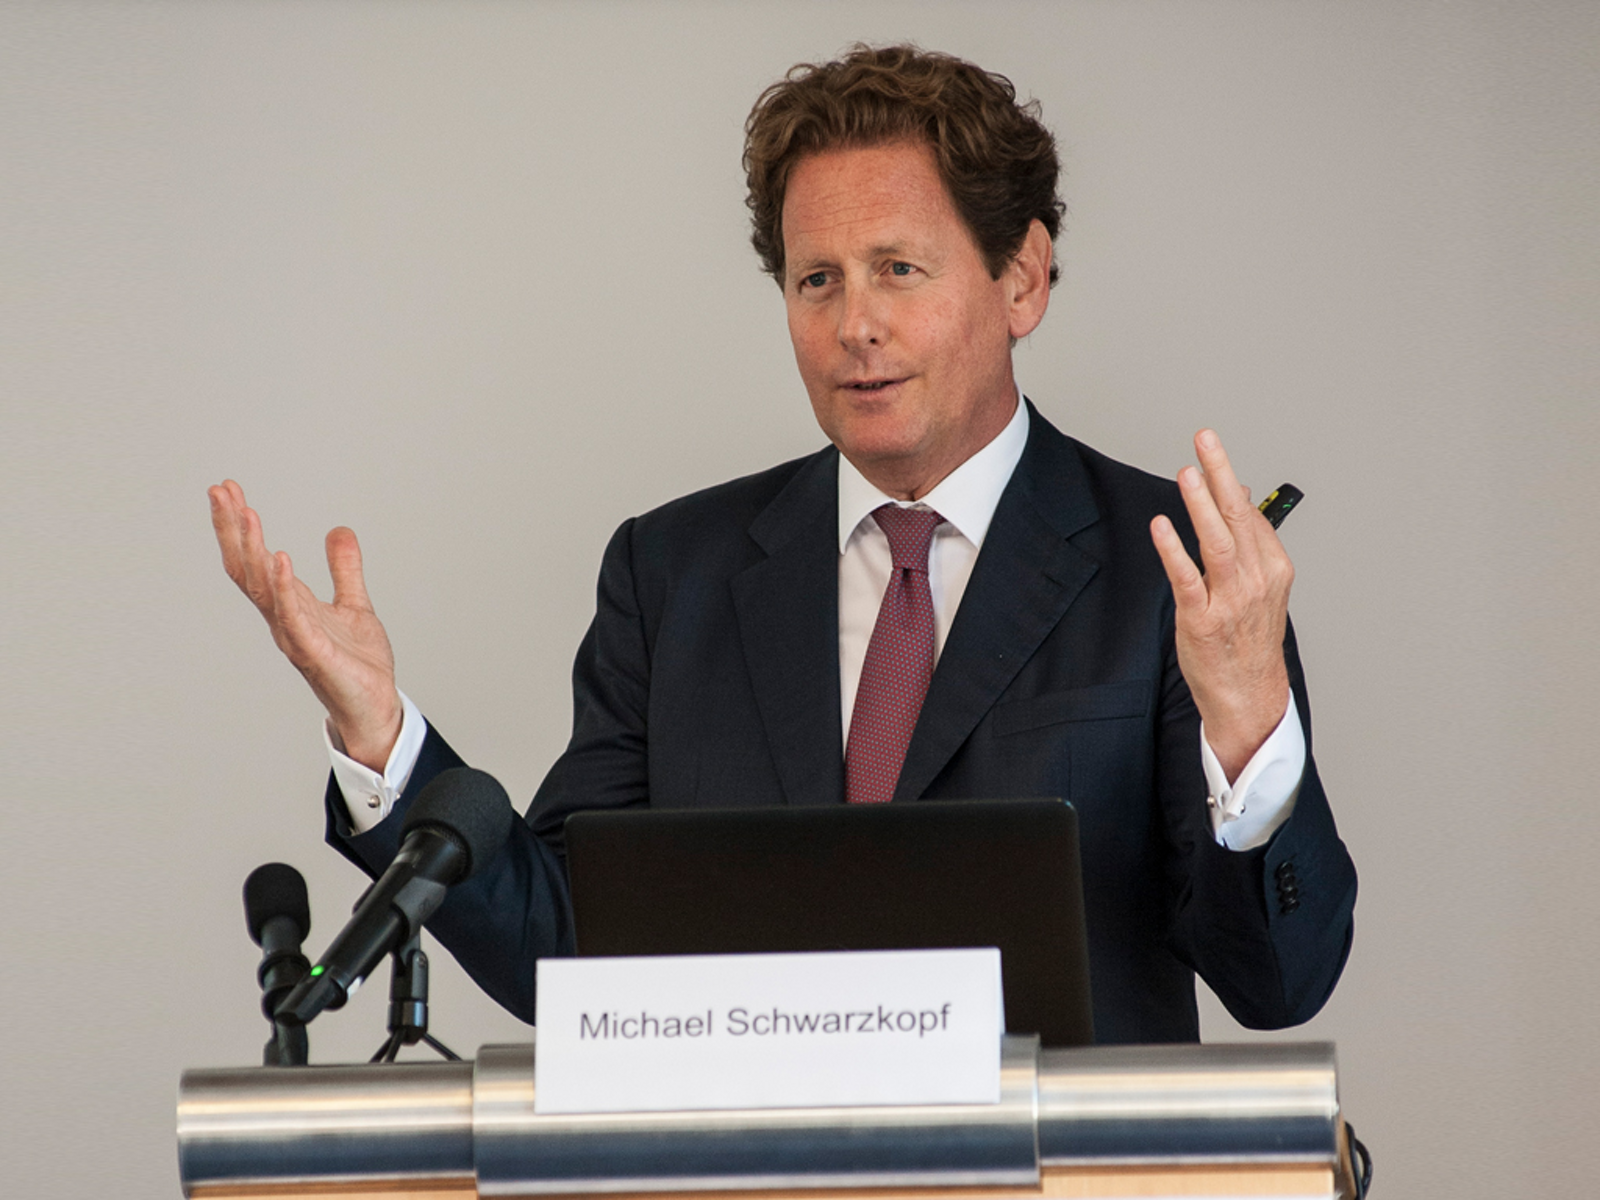 Michael Schwarzkopf en la conferencia de prensa anual del grupo Plansee